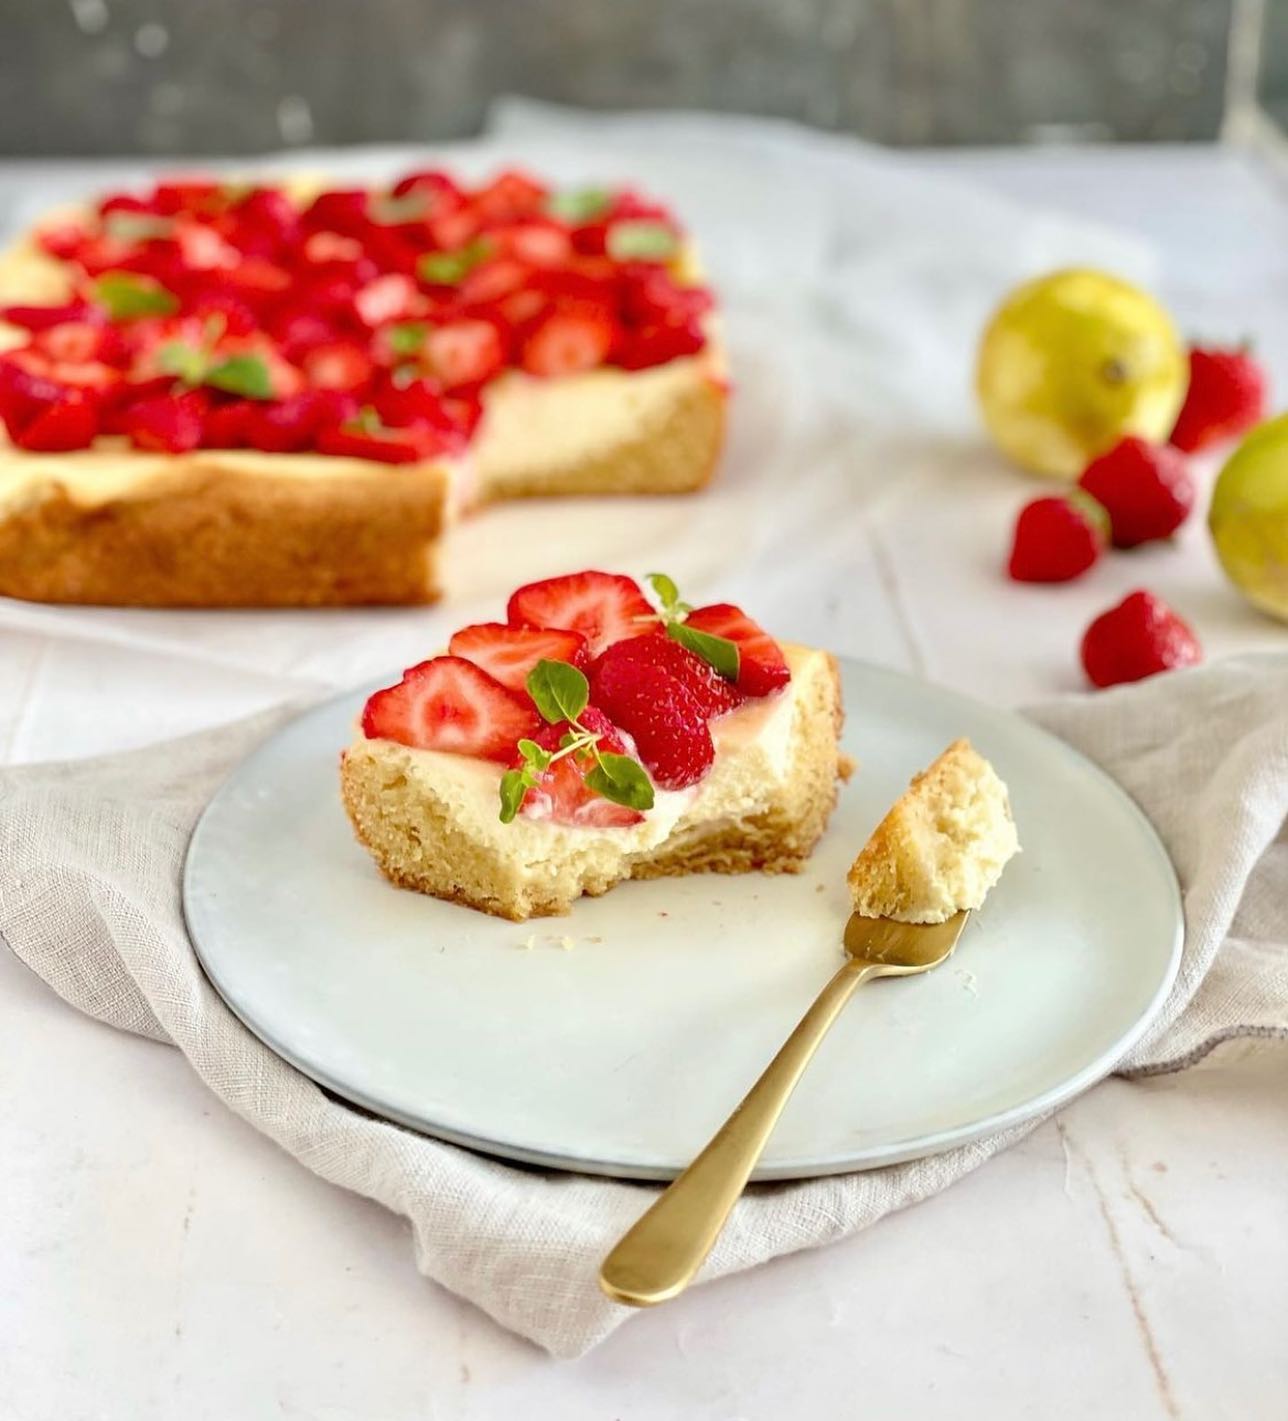 🍓En bagt jordbær cheesecake 🍓

Denne her kage “går ud” til alle jer, som godt kan lide en kage der ikke er super sød. 

En dejlig cremet og frisk kage ☺️💕

Den ville sagtens kunne laves med andre bær som; blåbær, brombær osv 

💡Husk at du kan gemme billedet nederst i højre hjørne 
💡Opskriften kan findes på www.madmusen.dk søg blot “cheesecake”

#kage #kake #cake #cheesecake #jordbær #jordbærkage #strawberry #deldinmad #dessert #fødselsdag #instafood #nrkmat #godtno #detsøteliv #detsødeliv #aftensmad #deldinkage #weeken #bradepandekage #långpannekaka #bær #nemmad #børnevenligmad #sommer